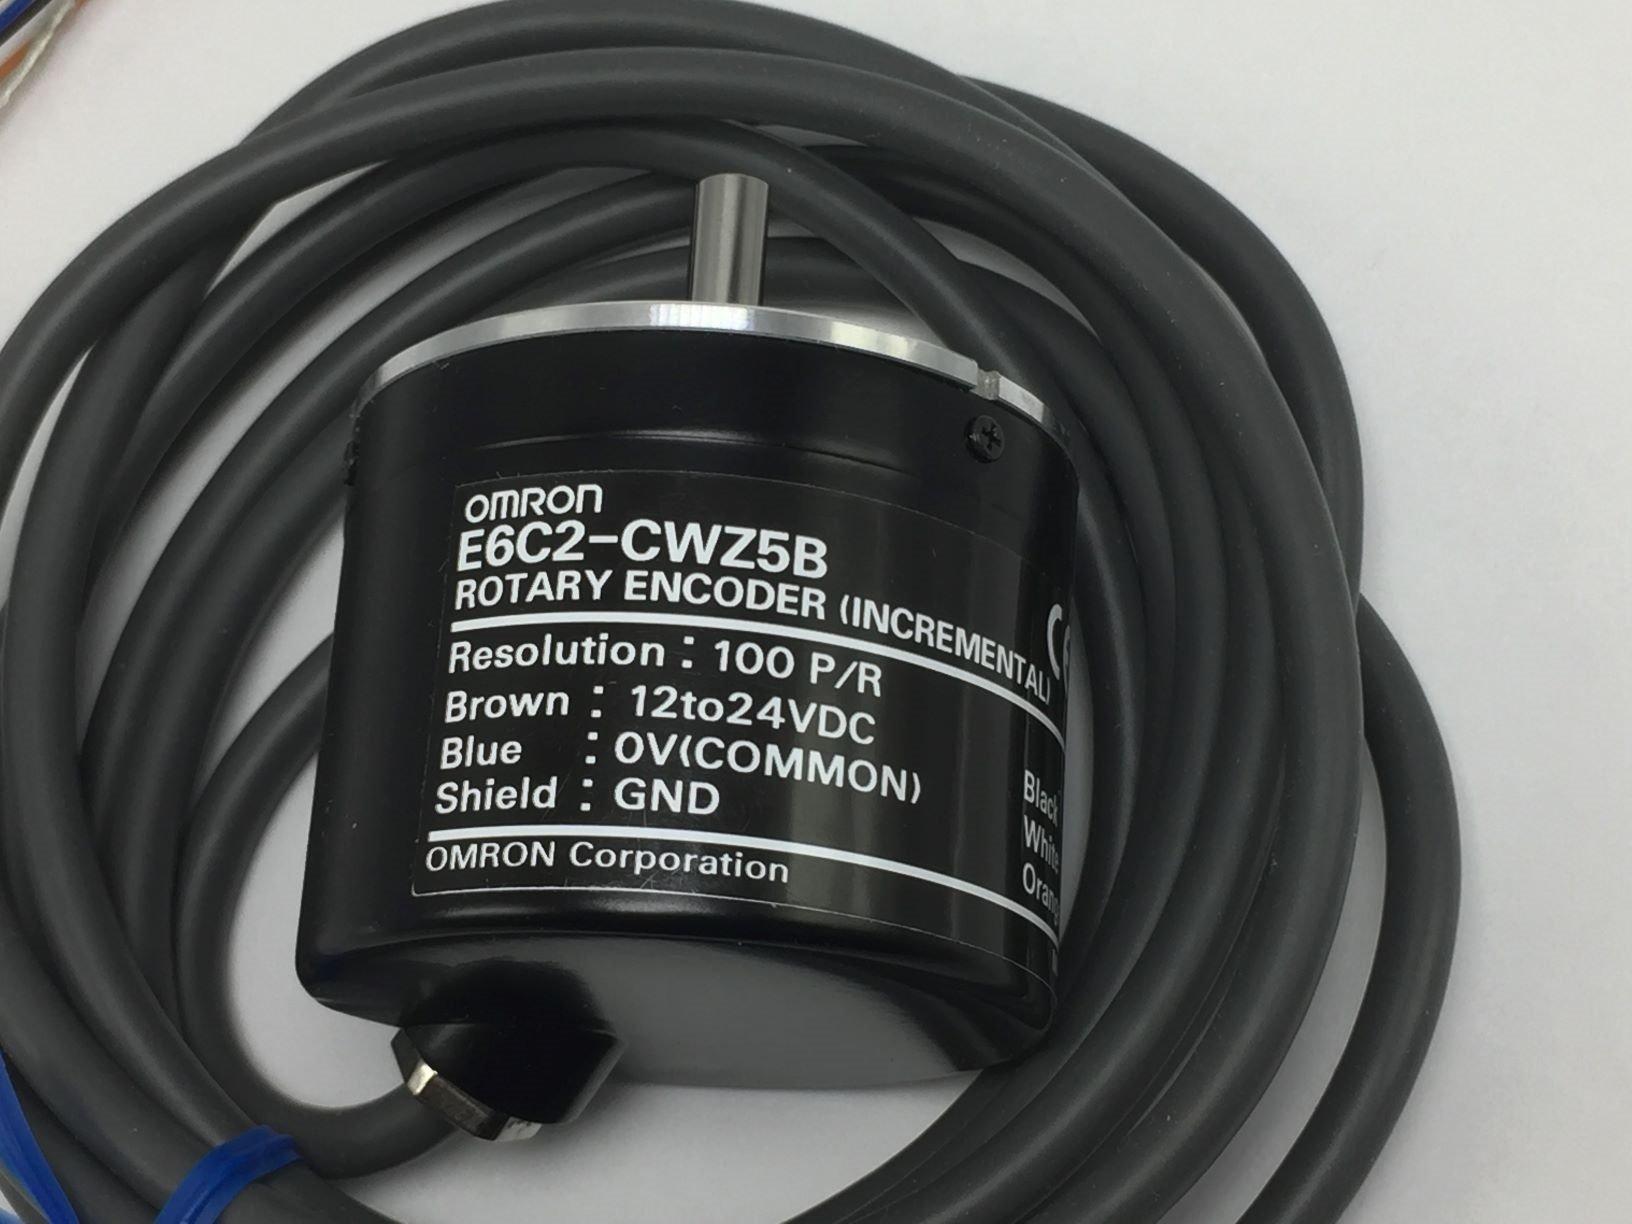 OMRON E6C2-CWZ5B ROTARY ENCODER 100 P/R 12-24VDC 